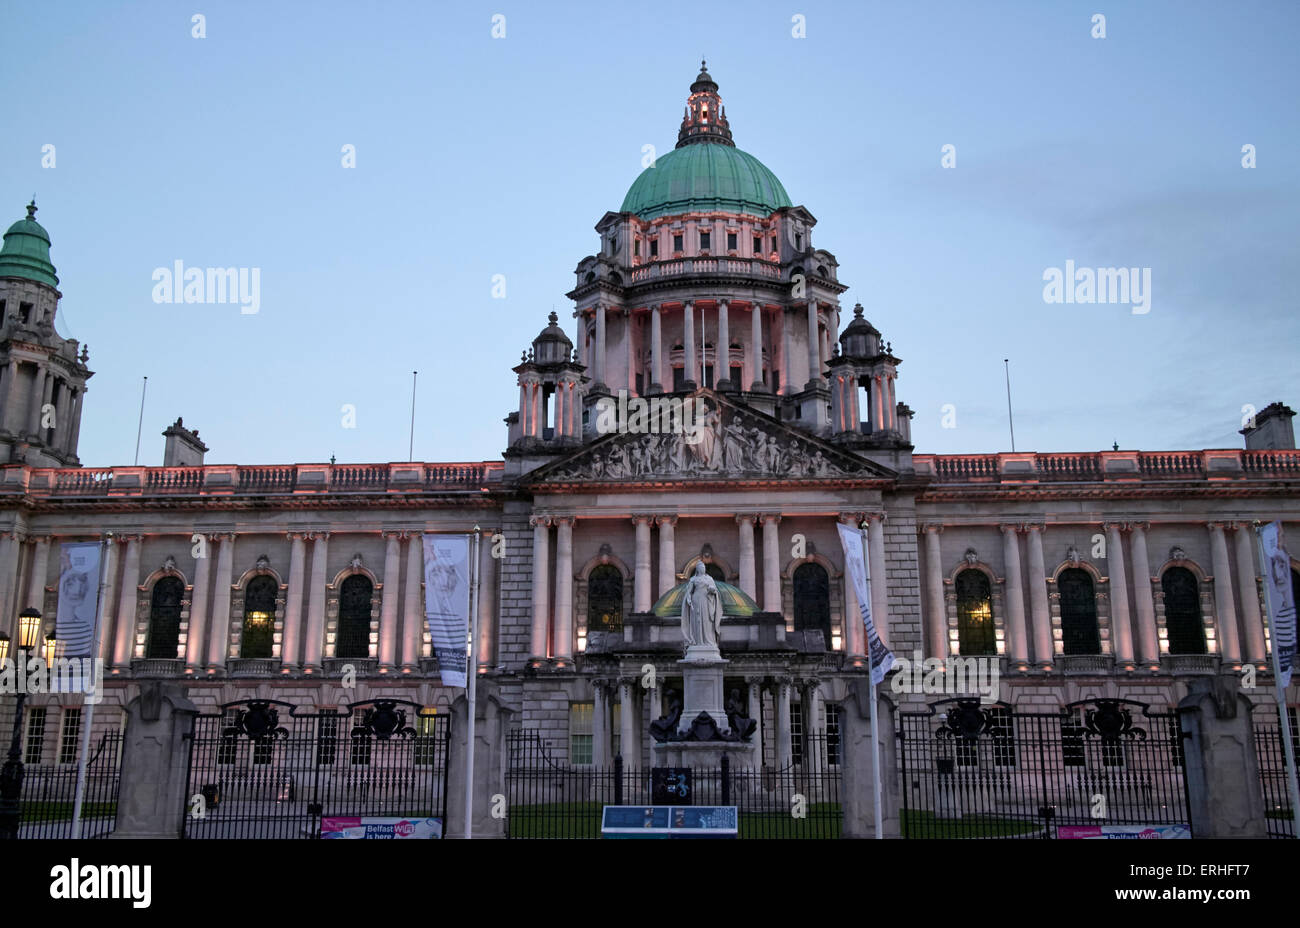 Belfast City Hall en début de soirée l'Irlande du Nord UK Banque D'Images